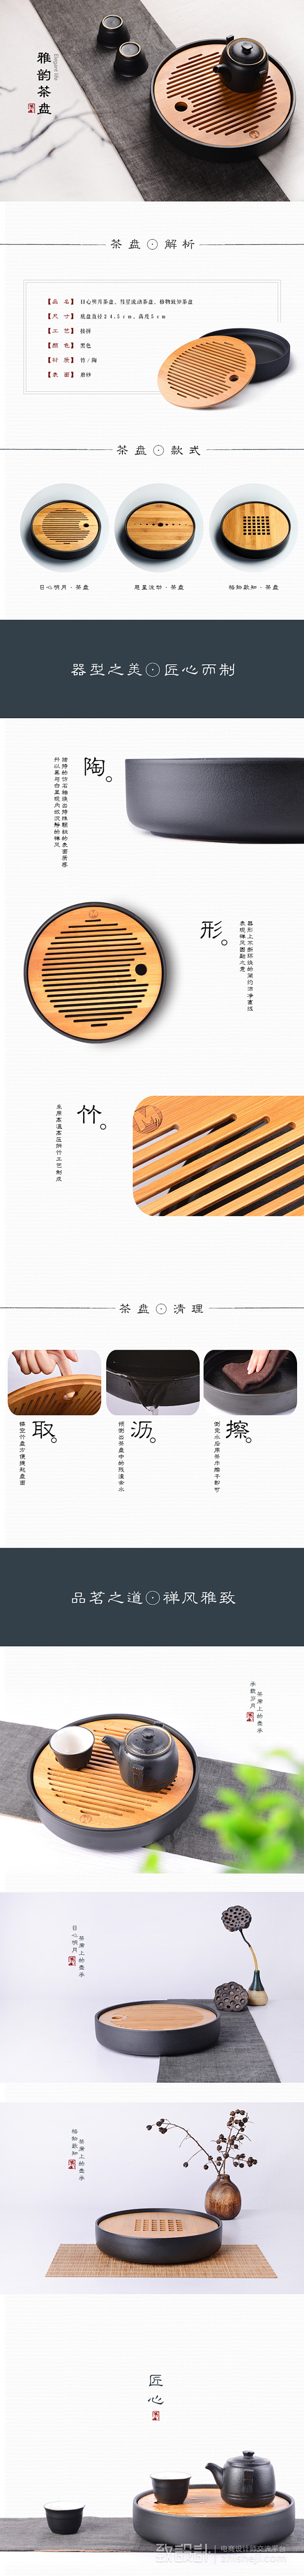 茶盘 木质陶瓷 中国风 时尚 详情页